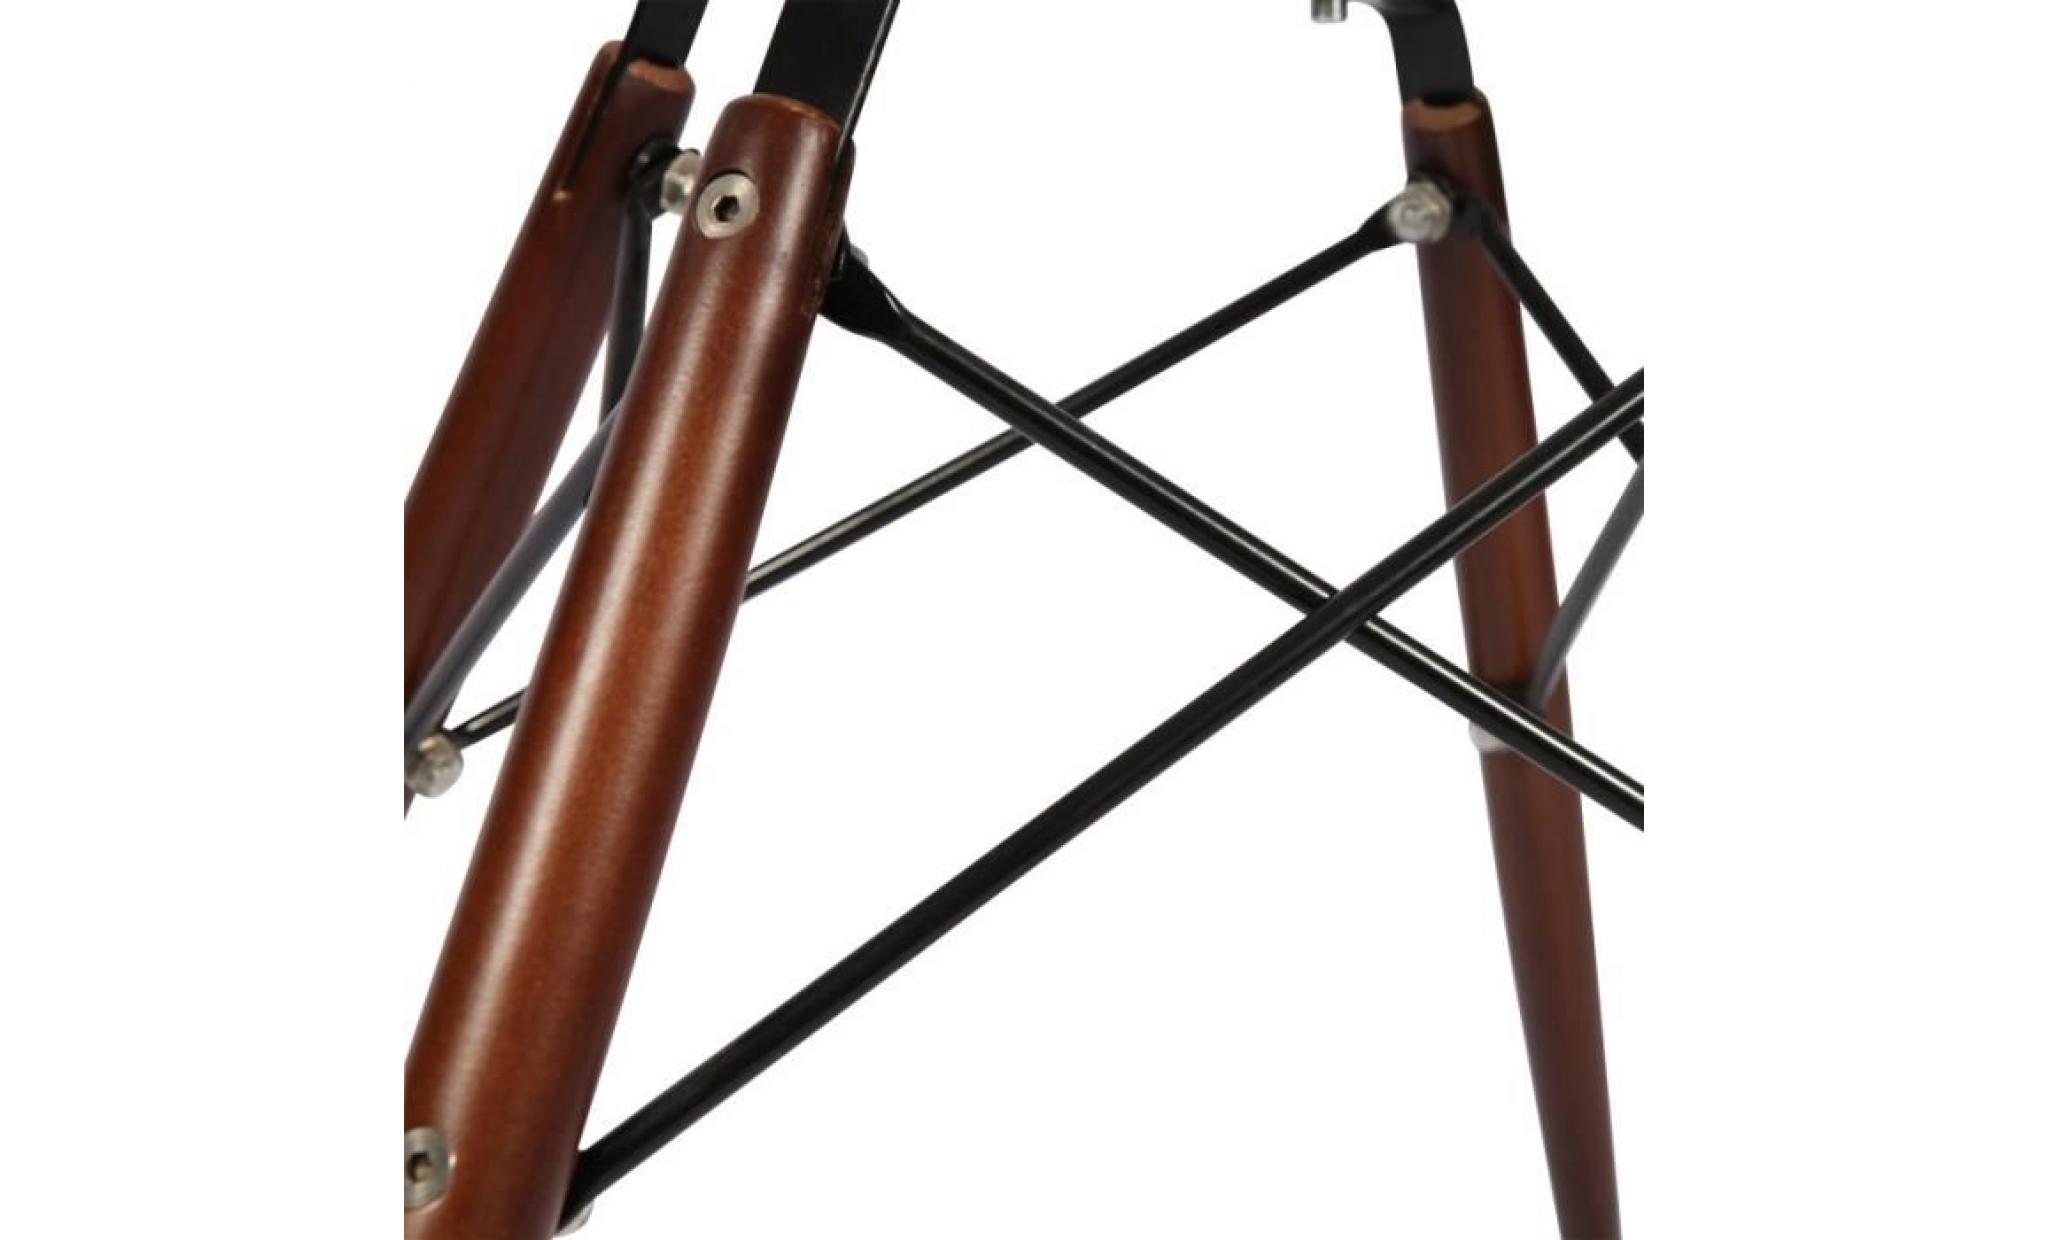 1 x fauteuil design retro style eames daw hauteur 48cm pieds en bois naturel gris perle mobistyl® pas cher